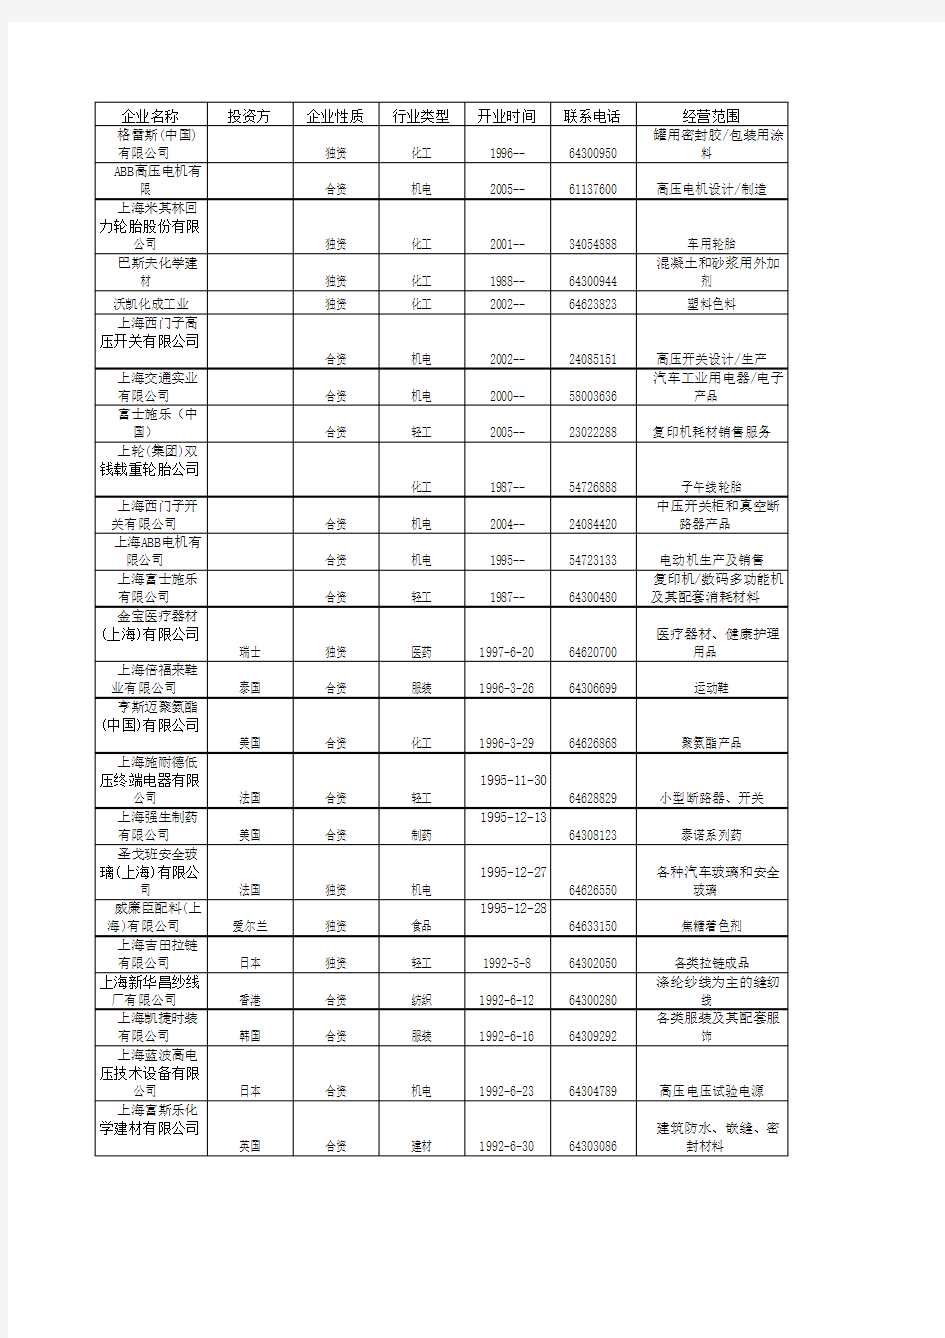 上海闵行开发区企业名录